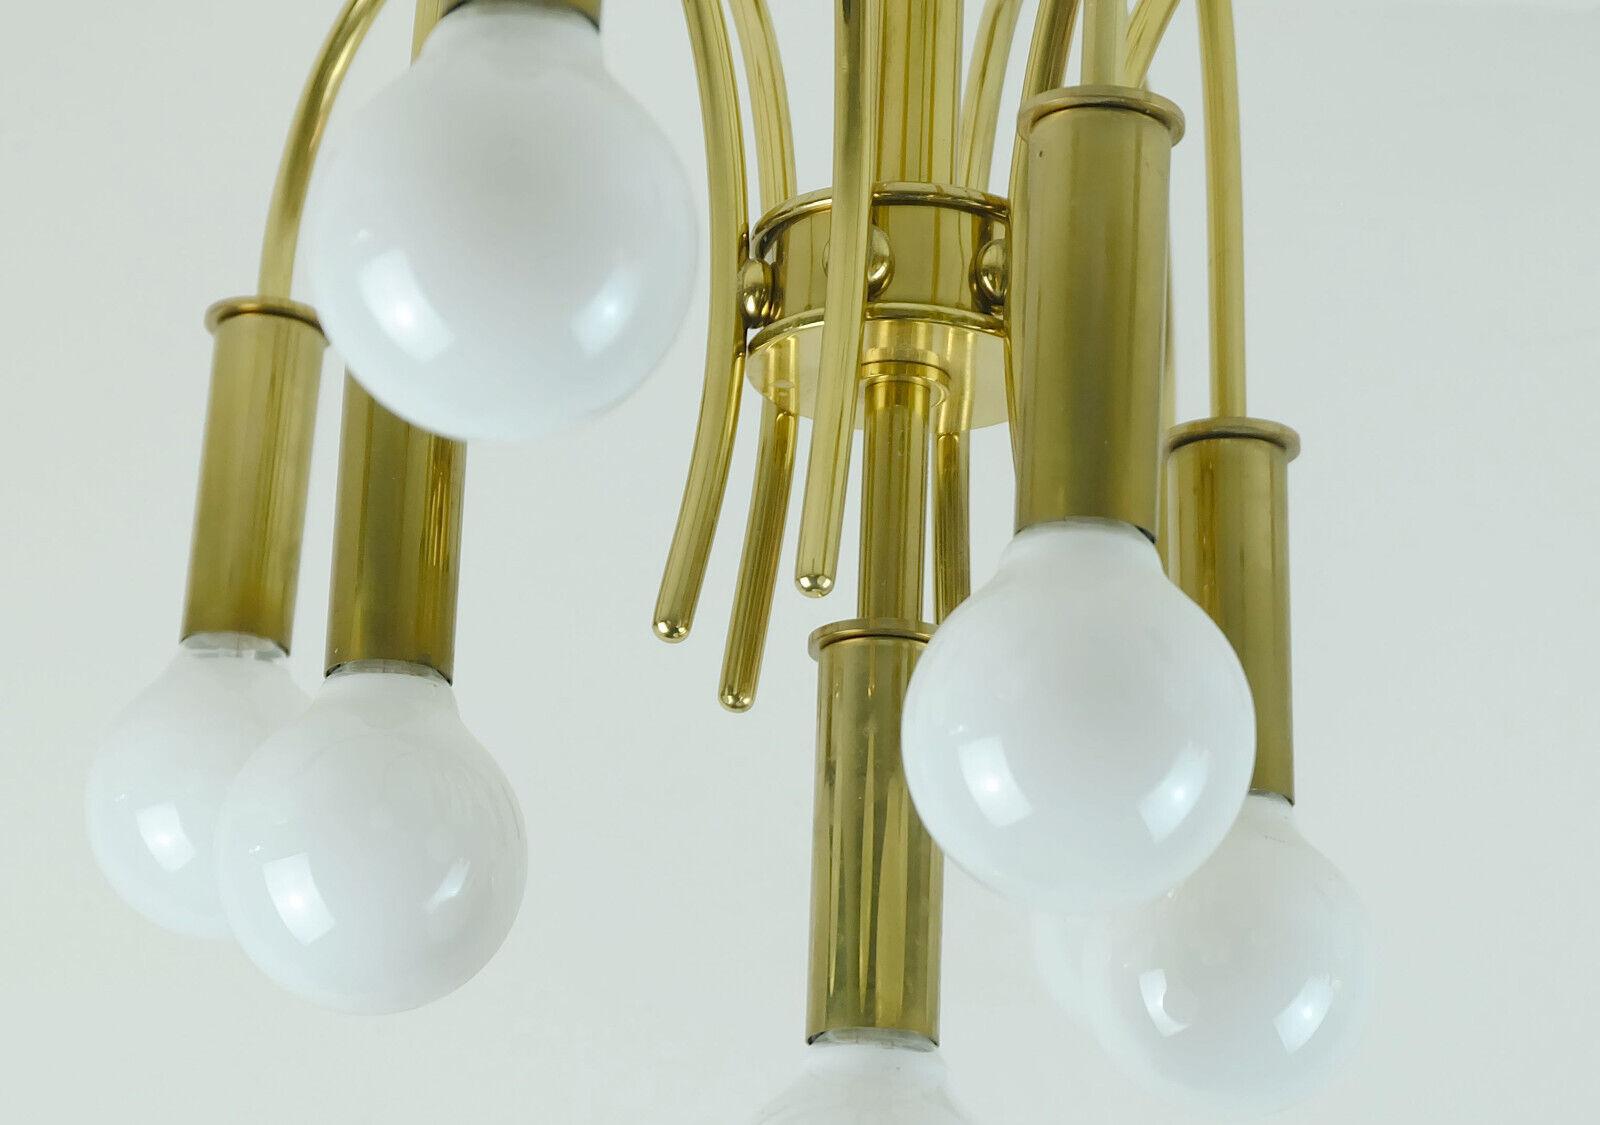 1970s sputnik brass CEILING LIGHT 10-light chandelier schroeder & co. For Sale 2